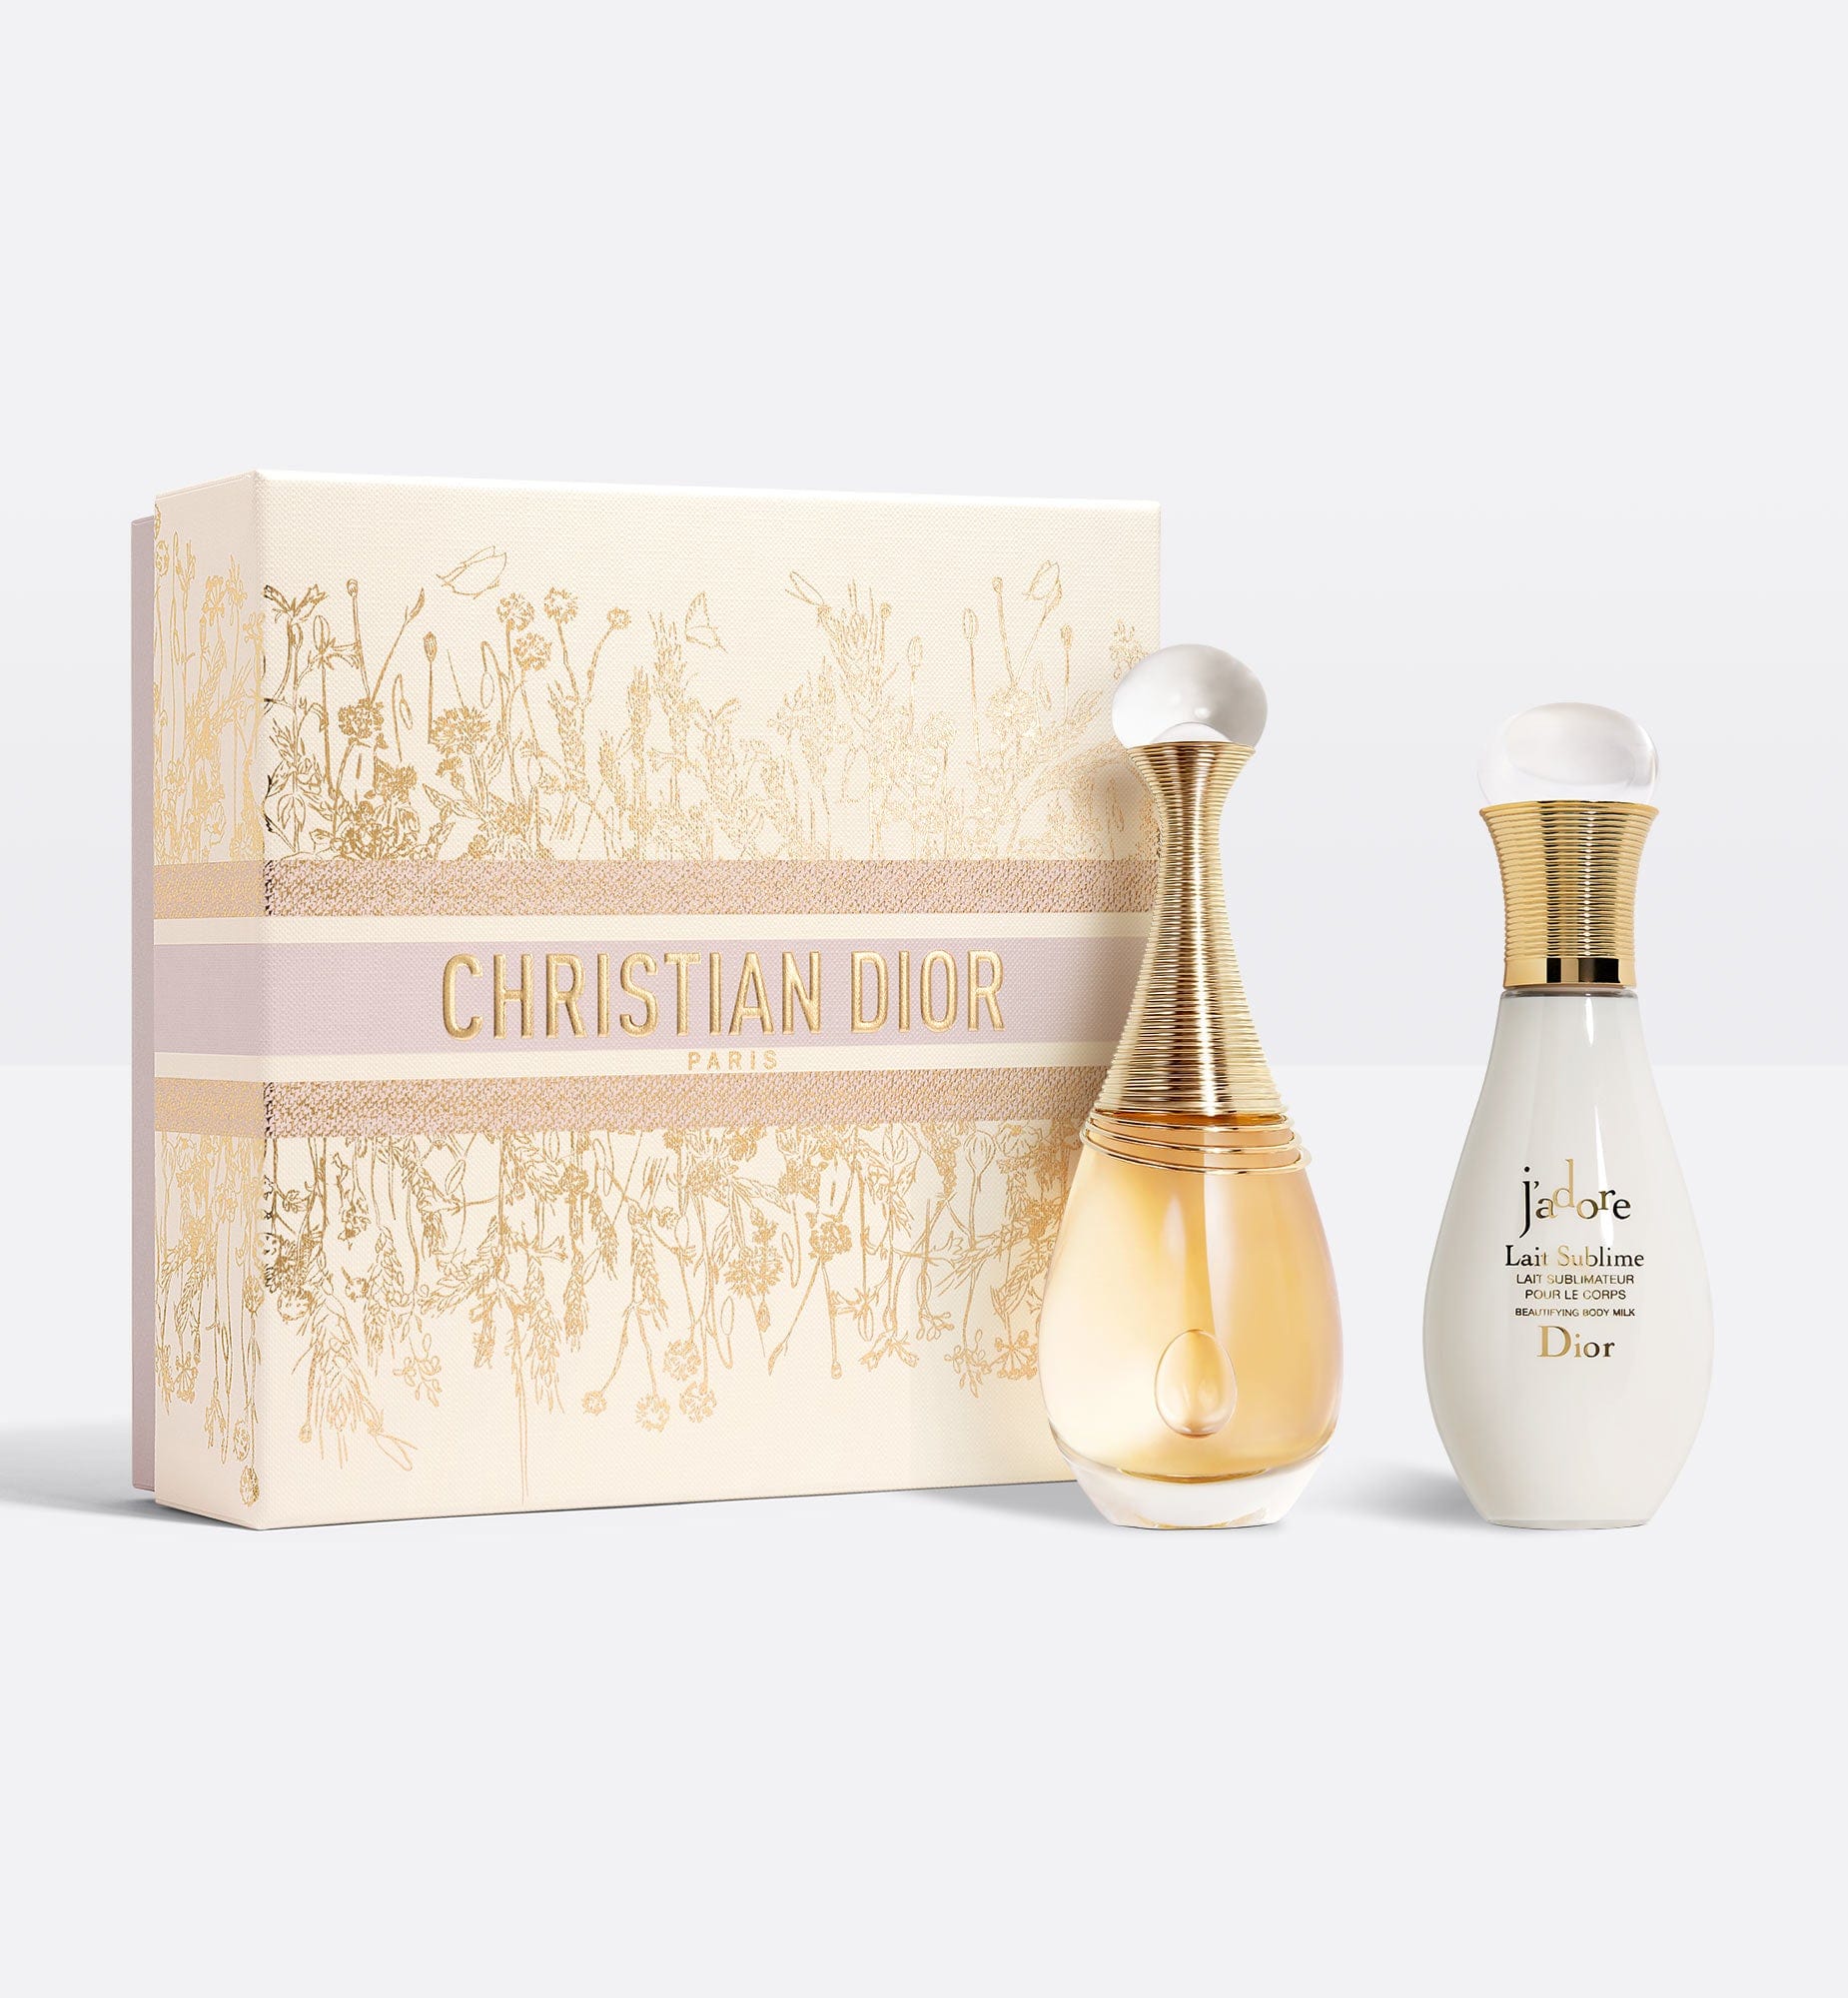 J’adore Eau de Parfum Set - Limited Edition | Eau de Parfum and Body Milk